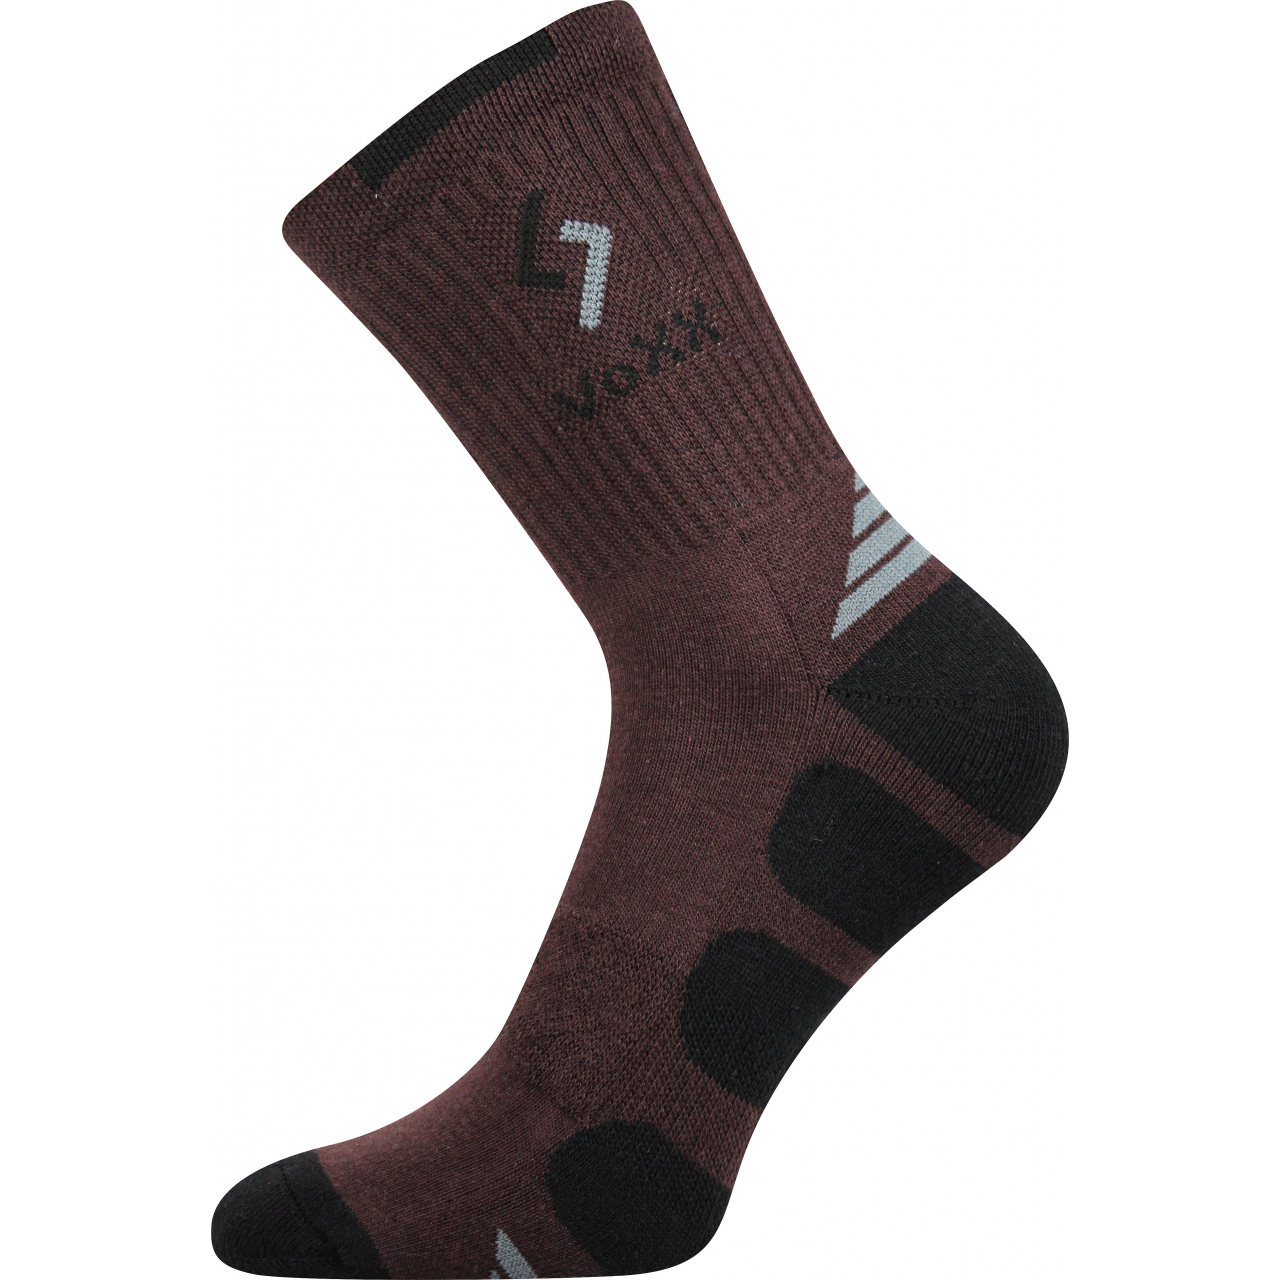 Ponožky sportovní Voxx Tronic - hnědé-černé, 43-46